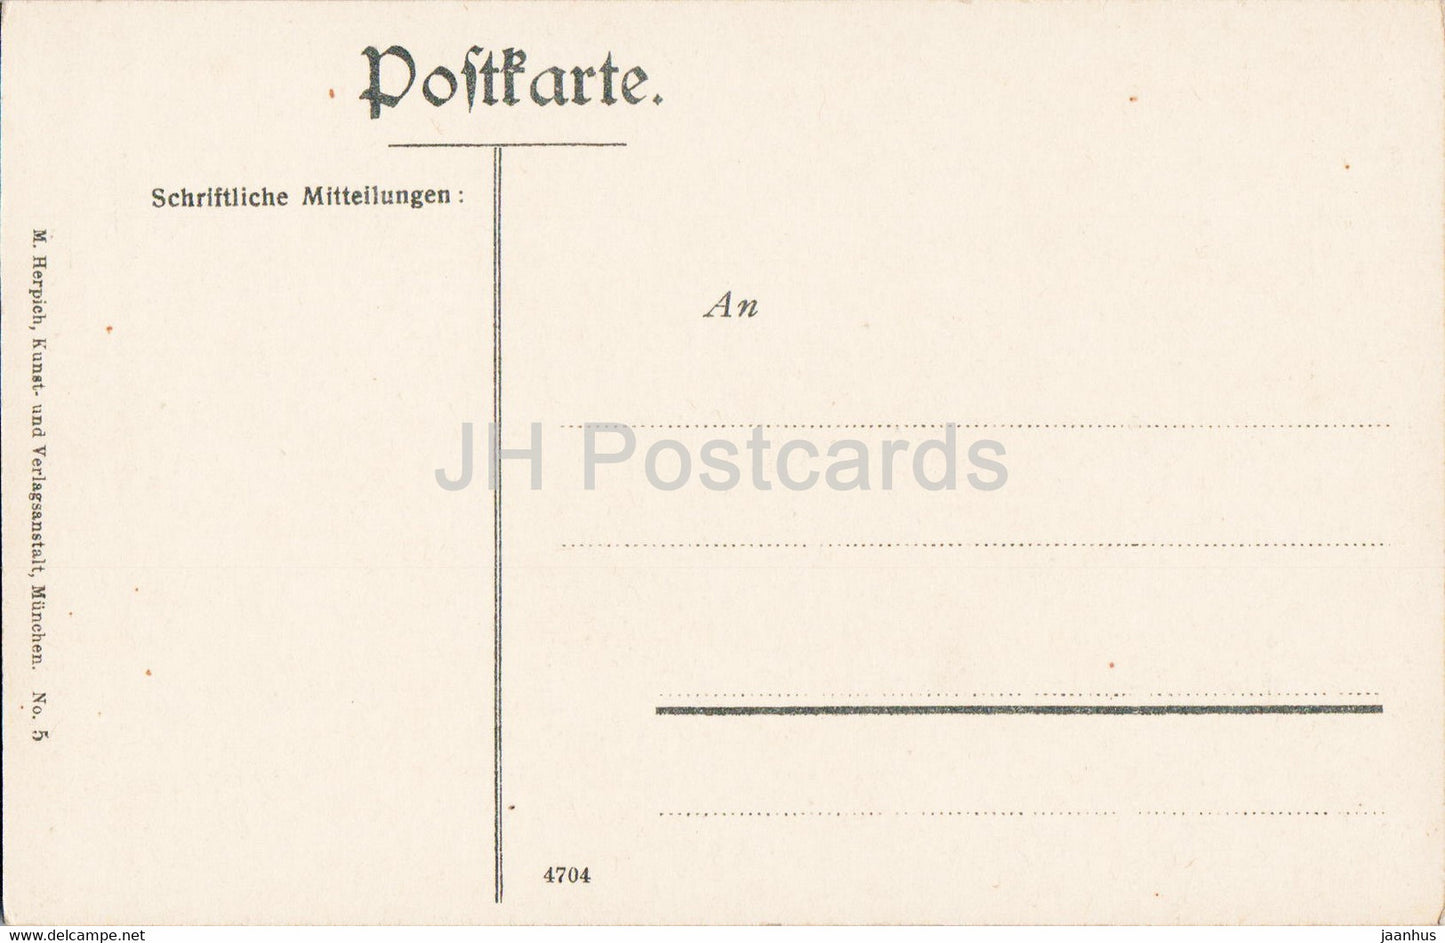 München - Kgl Hoftheater - Theater - Straßenbahn - 5 - alte Postkarte - 1906 - Deutschland - unbenutzt